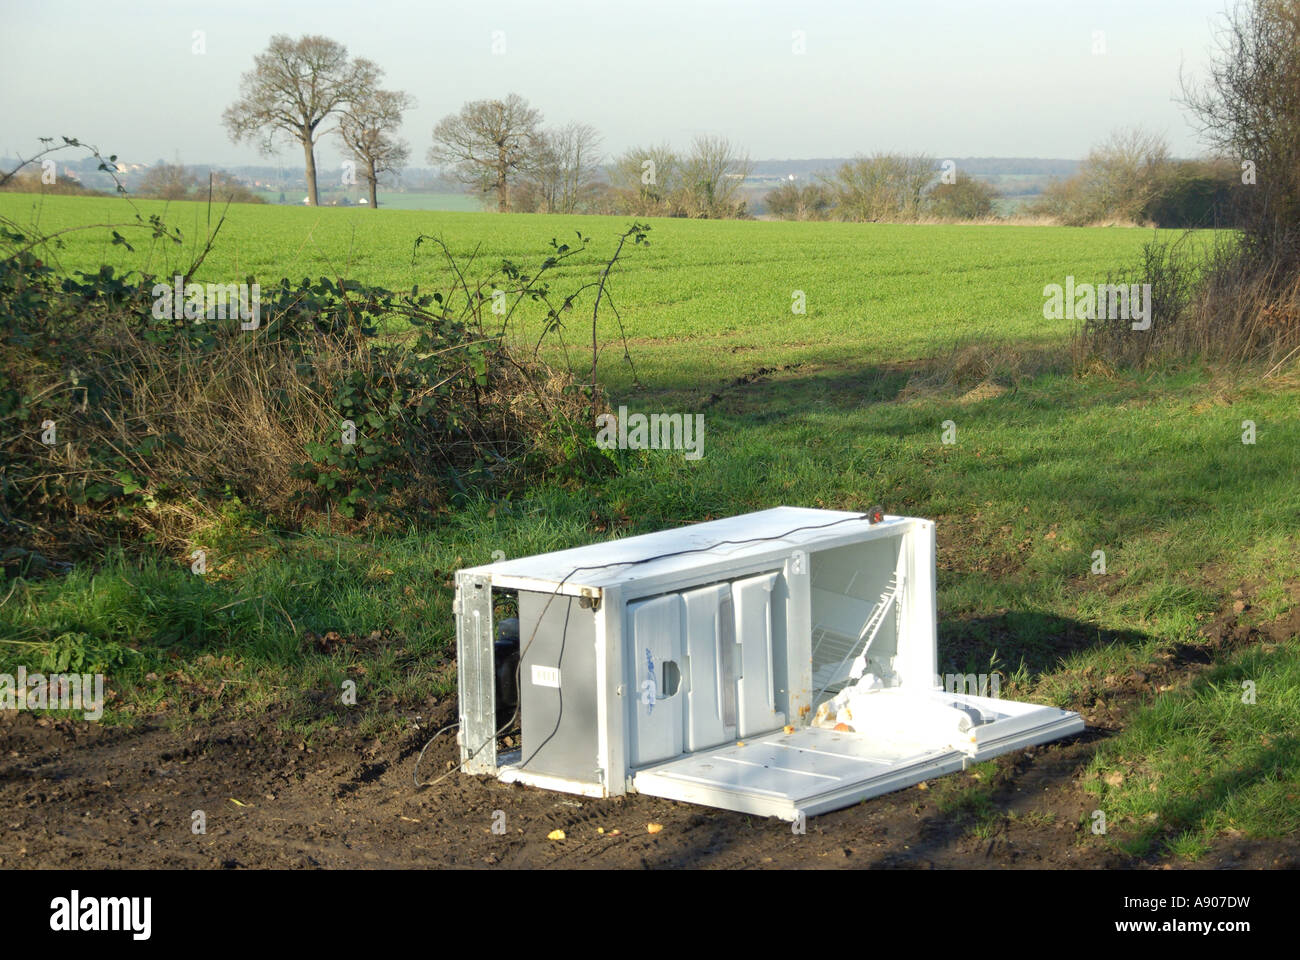 Les décharges sauvages de grands biens blanc réfrigérateur congélateur appareil électrique à côté de la route faisant l'objet d'un chemin de campagne en campagne agricole Essex England UK Banque D'Images